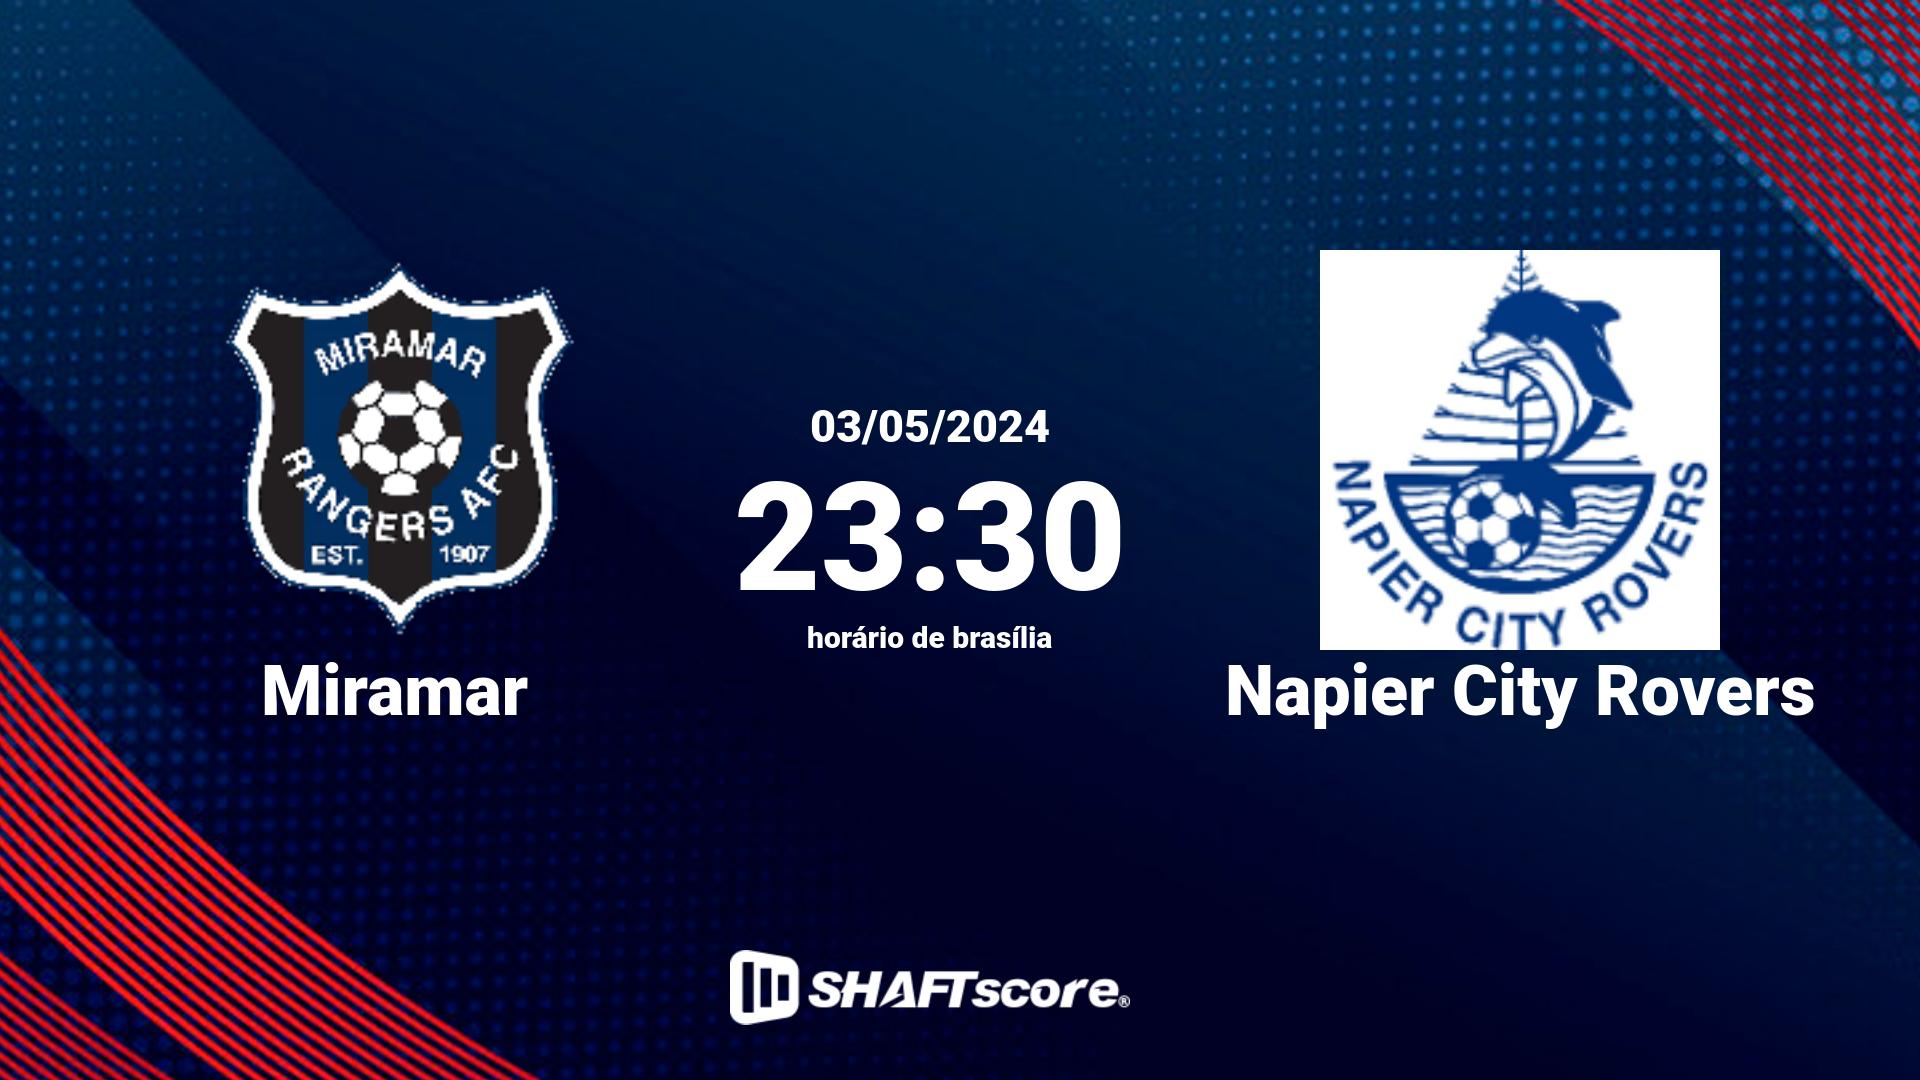 Estatísticas do jogo Miramar vs Napier City Rovers 03.05 23:30